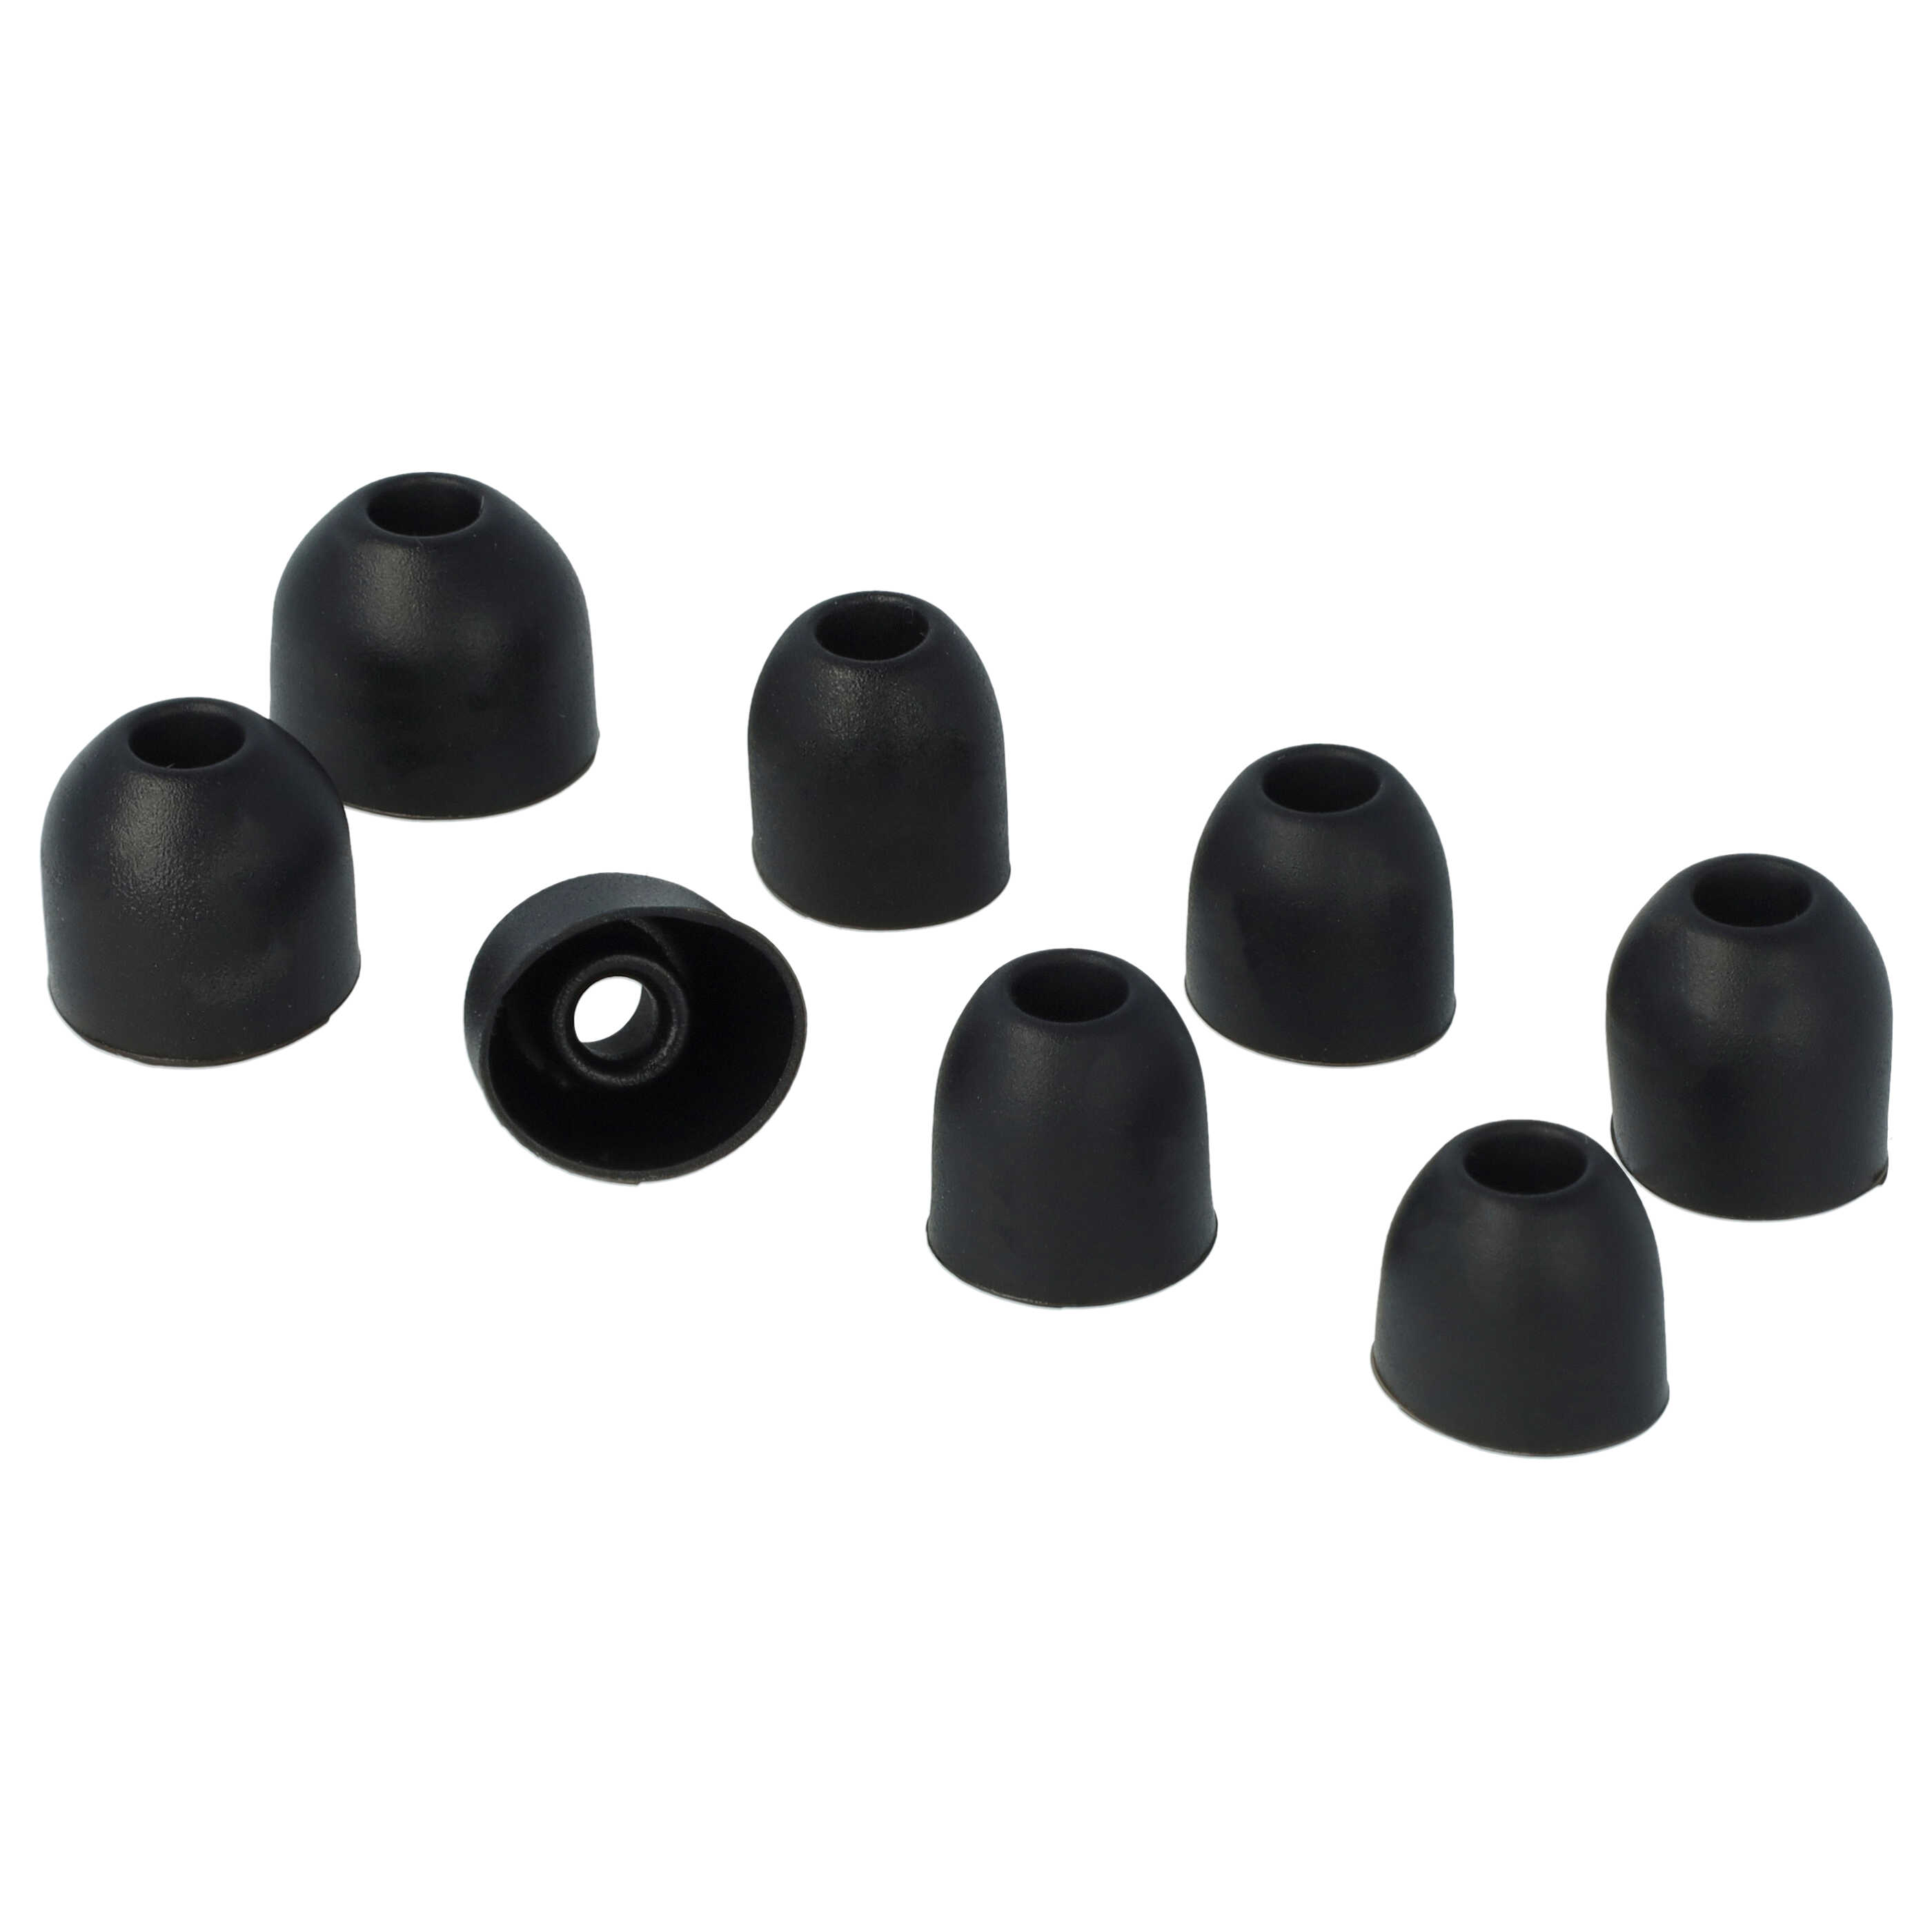  7 Paires dembouts d'oreillettes compatible avec WF-1000XM3 Sony écouteurs sans-fil - Noir / blanc, silicone, 